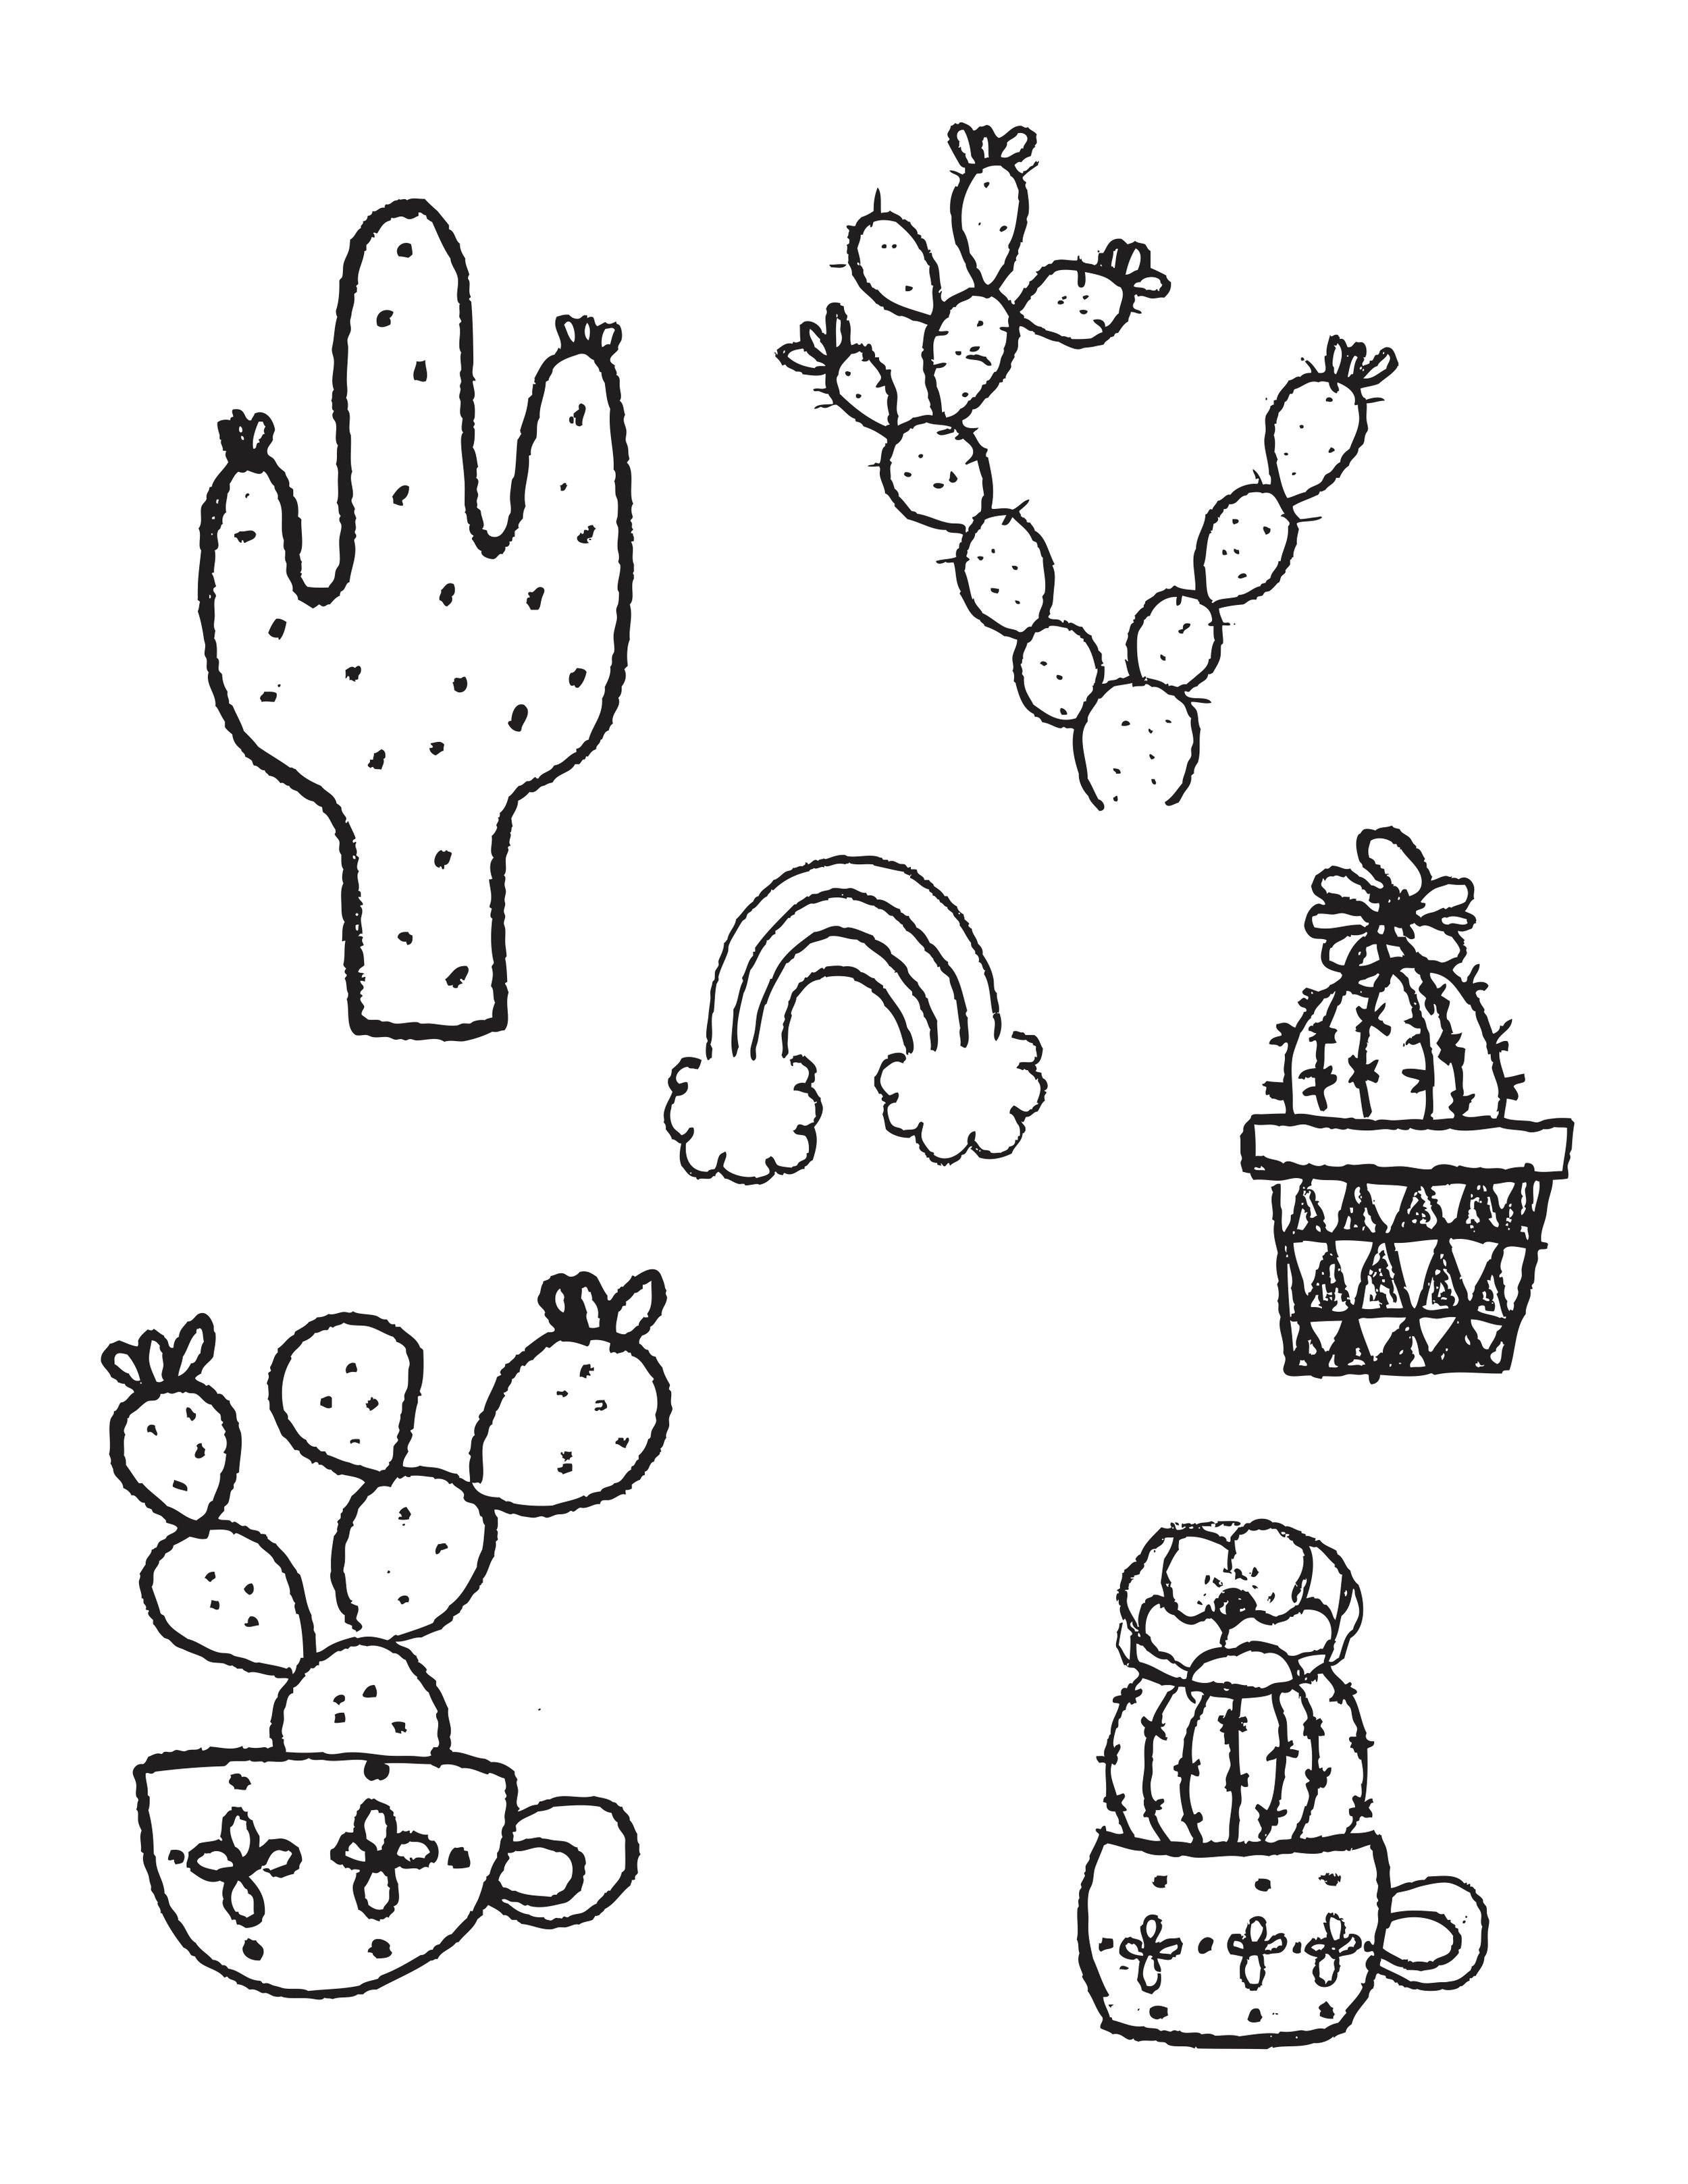 13 cactus designs oh so cute la la la 2016 copy.jpg